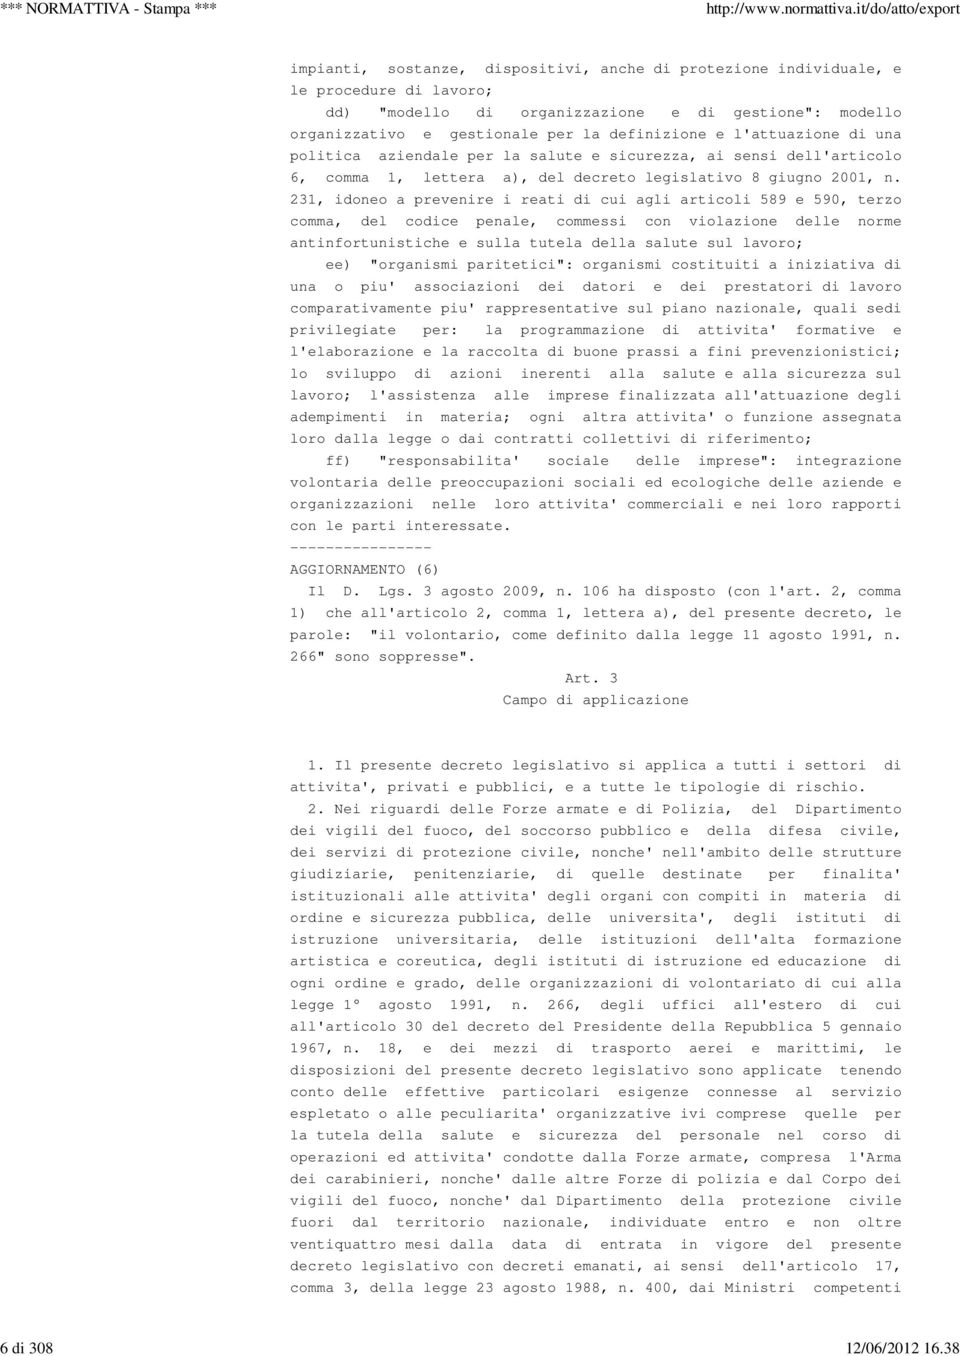 l'attuazione di una politica aziendale per la salute e sicurezza, ai sensi dell'articolo 6, comma 1, lettera a), del decreto legislativo 8 giugno 2001, n.